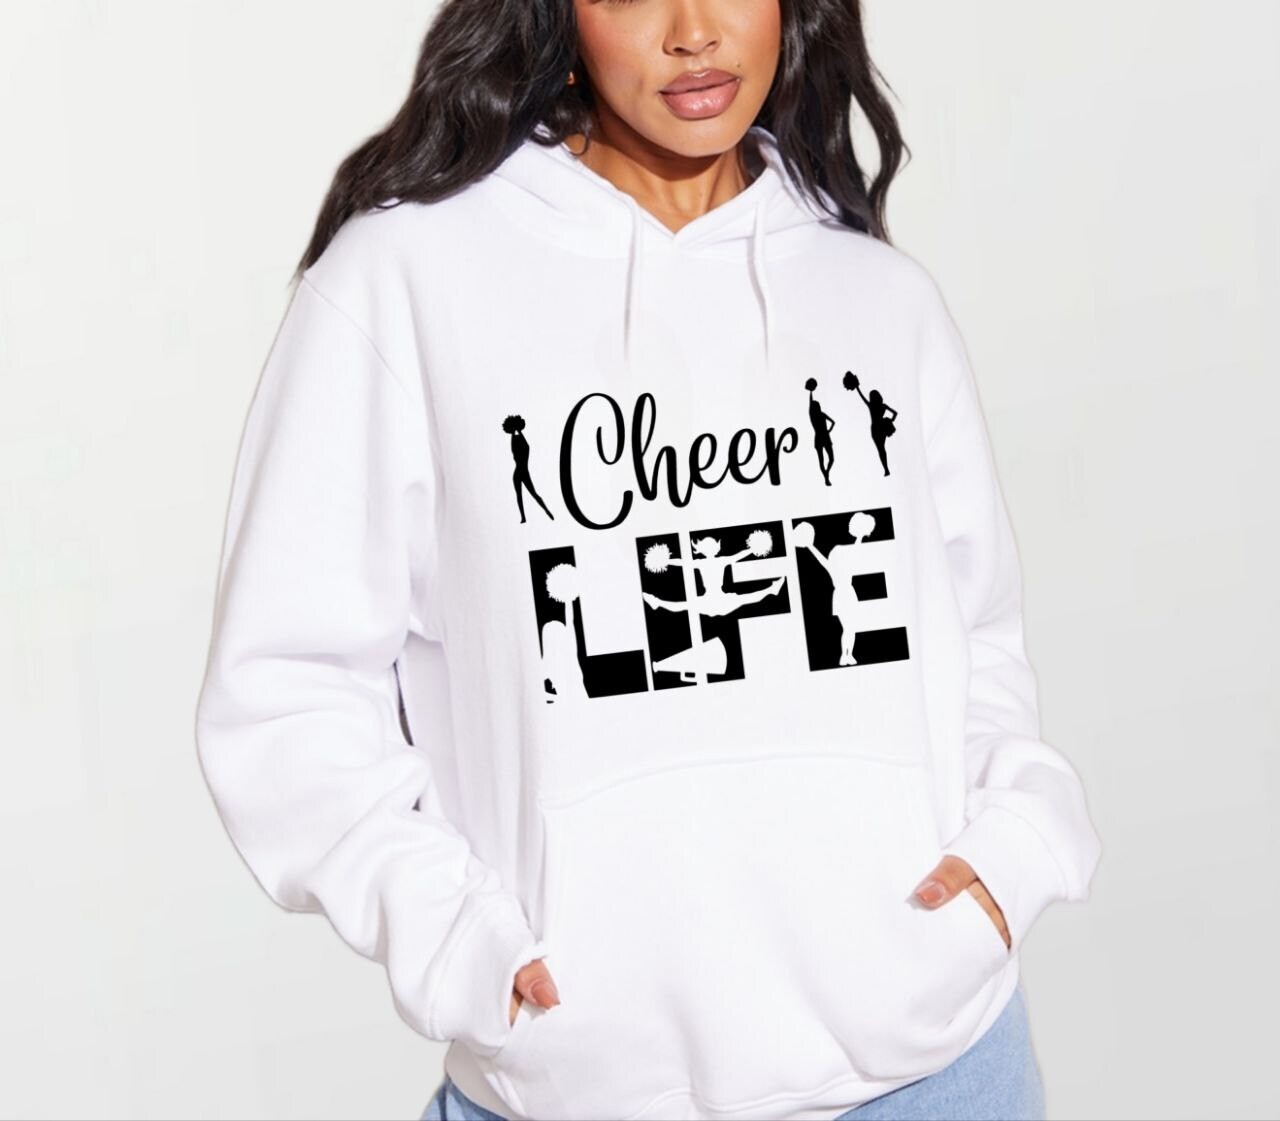 Cheer life_Women's Elite Hoodie white